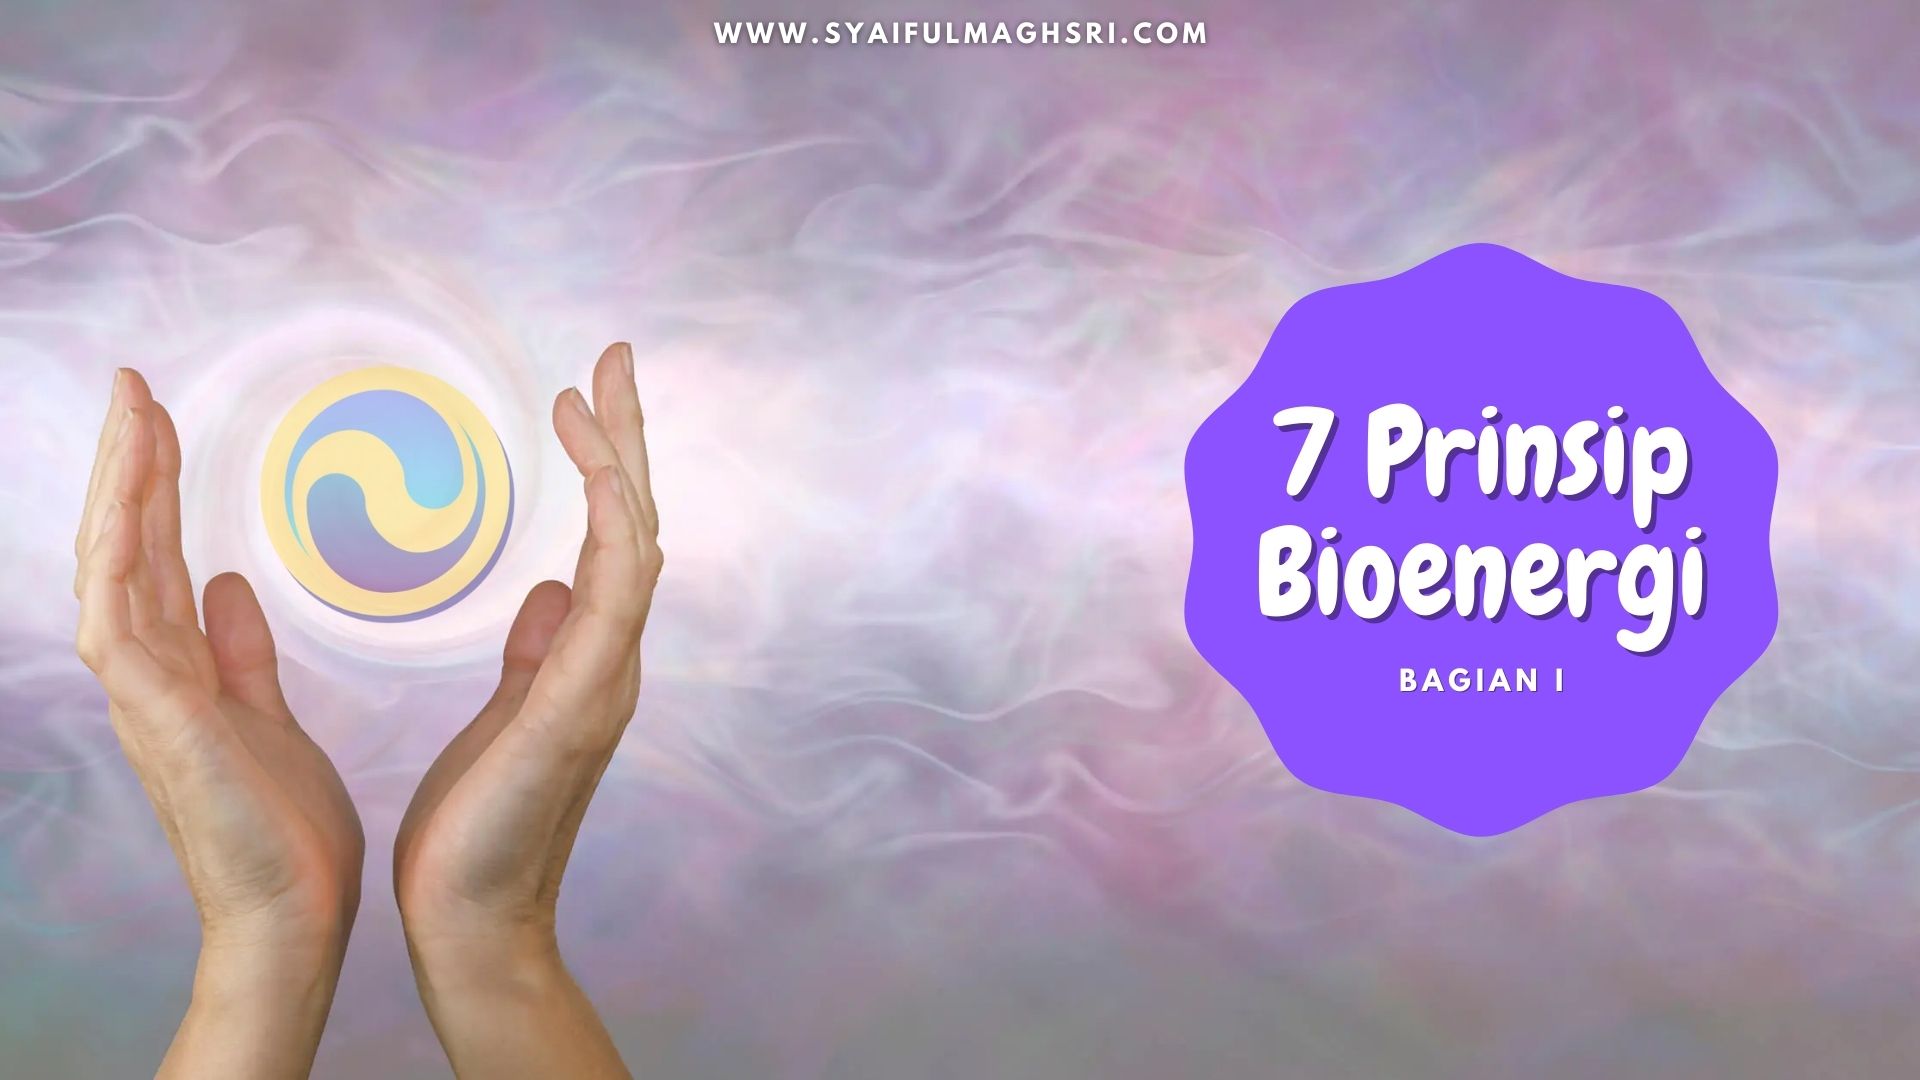 7 prinsip Bioenergi Bagian 3 - Syaiful Maghsri.com